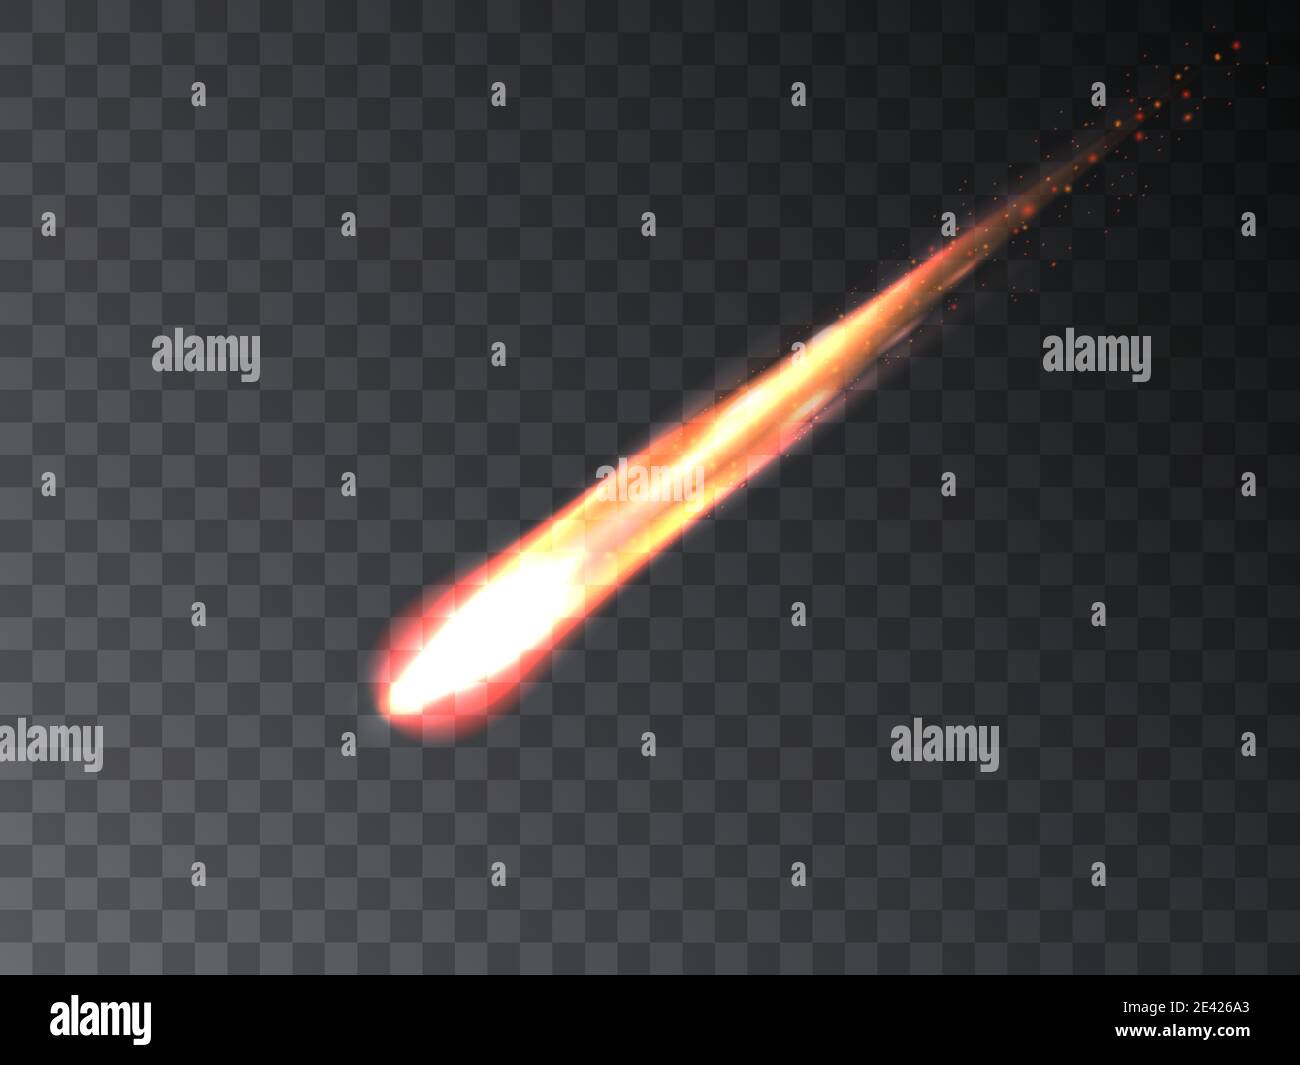 caduta di meteorite. asteroide di fuoco che brucia. Illustrazione vettoriale di una cometa che brucia in caduta meteore su uno sfondo trasparente. Illustrazione Vettoriale